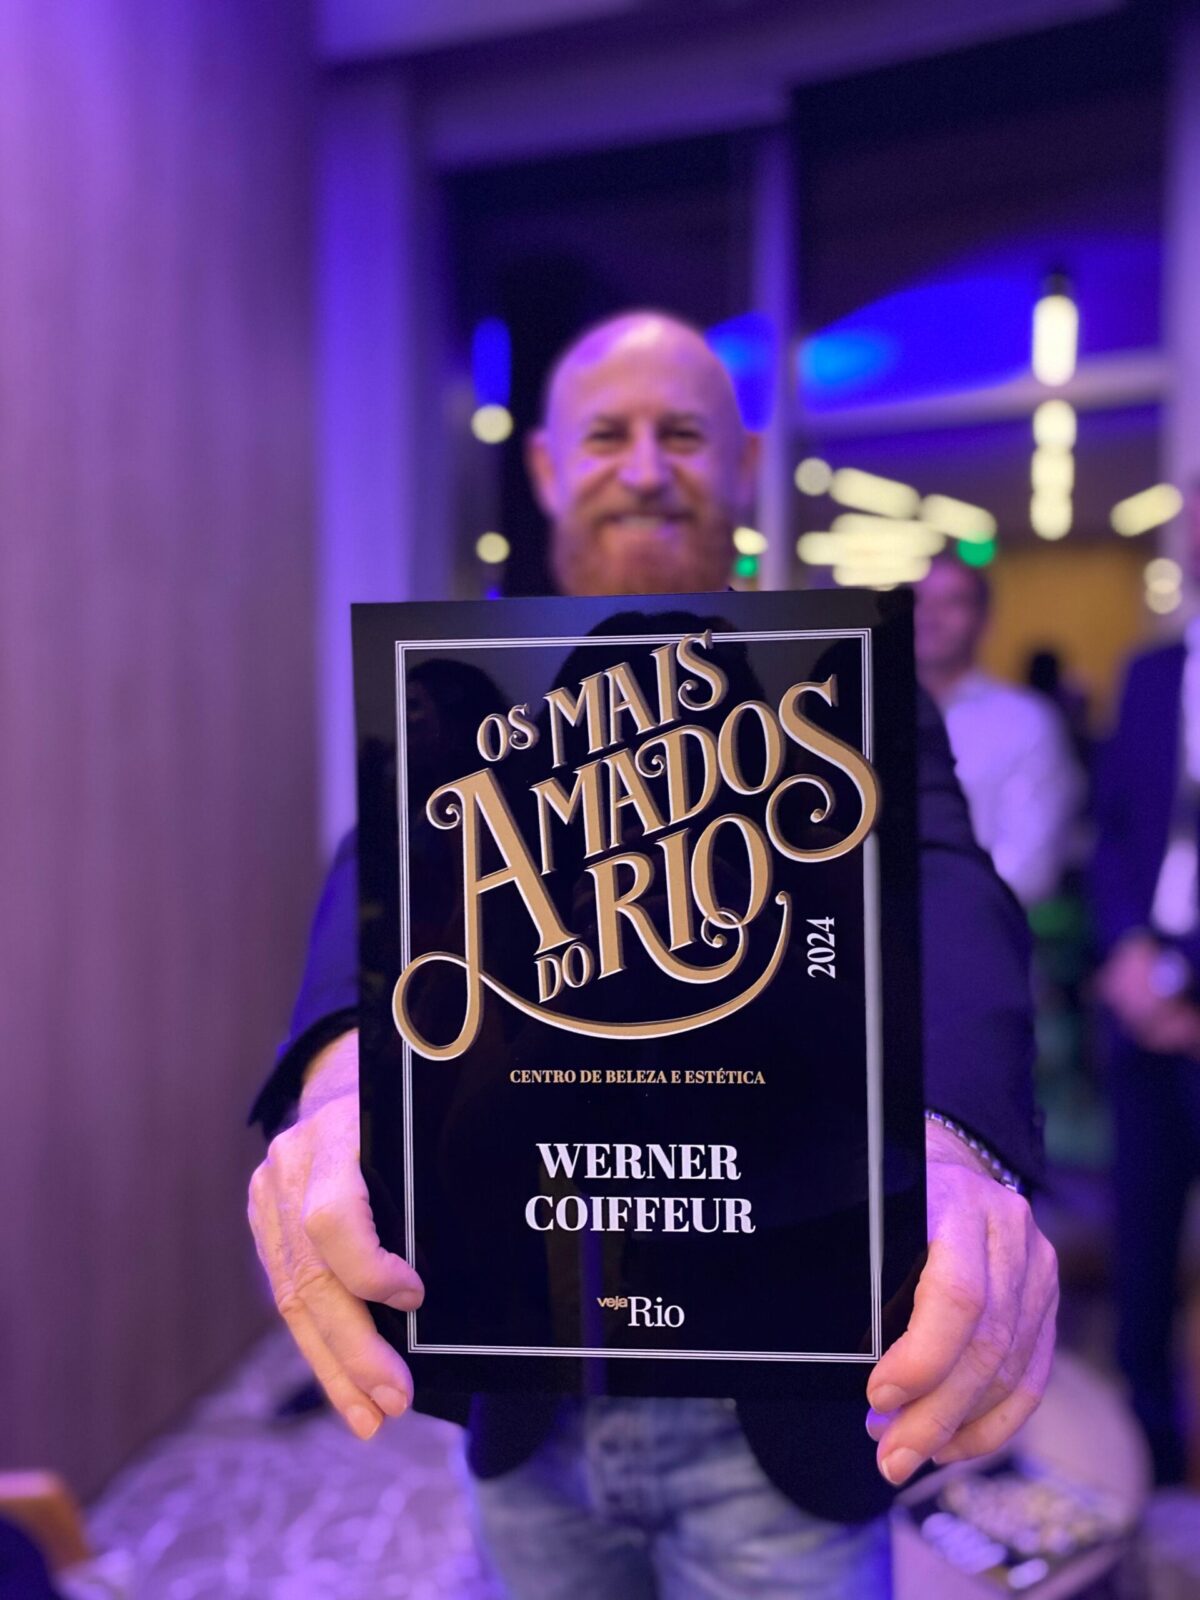 Rede Werner recebe o prêmio "Mais Amados do Rio" por mais um ano consecutivo